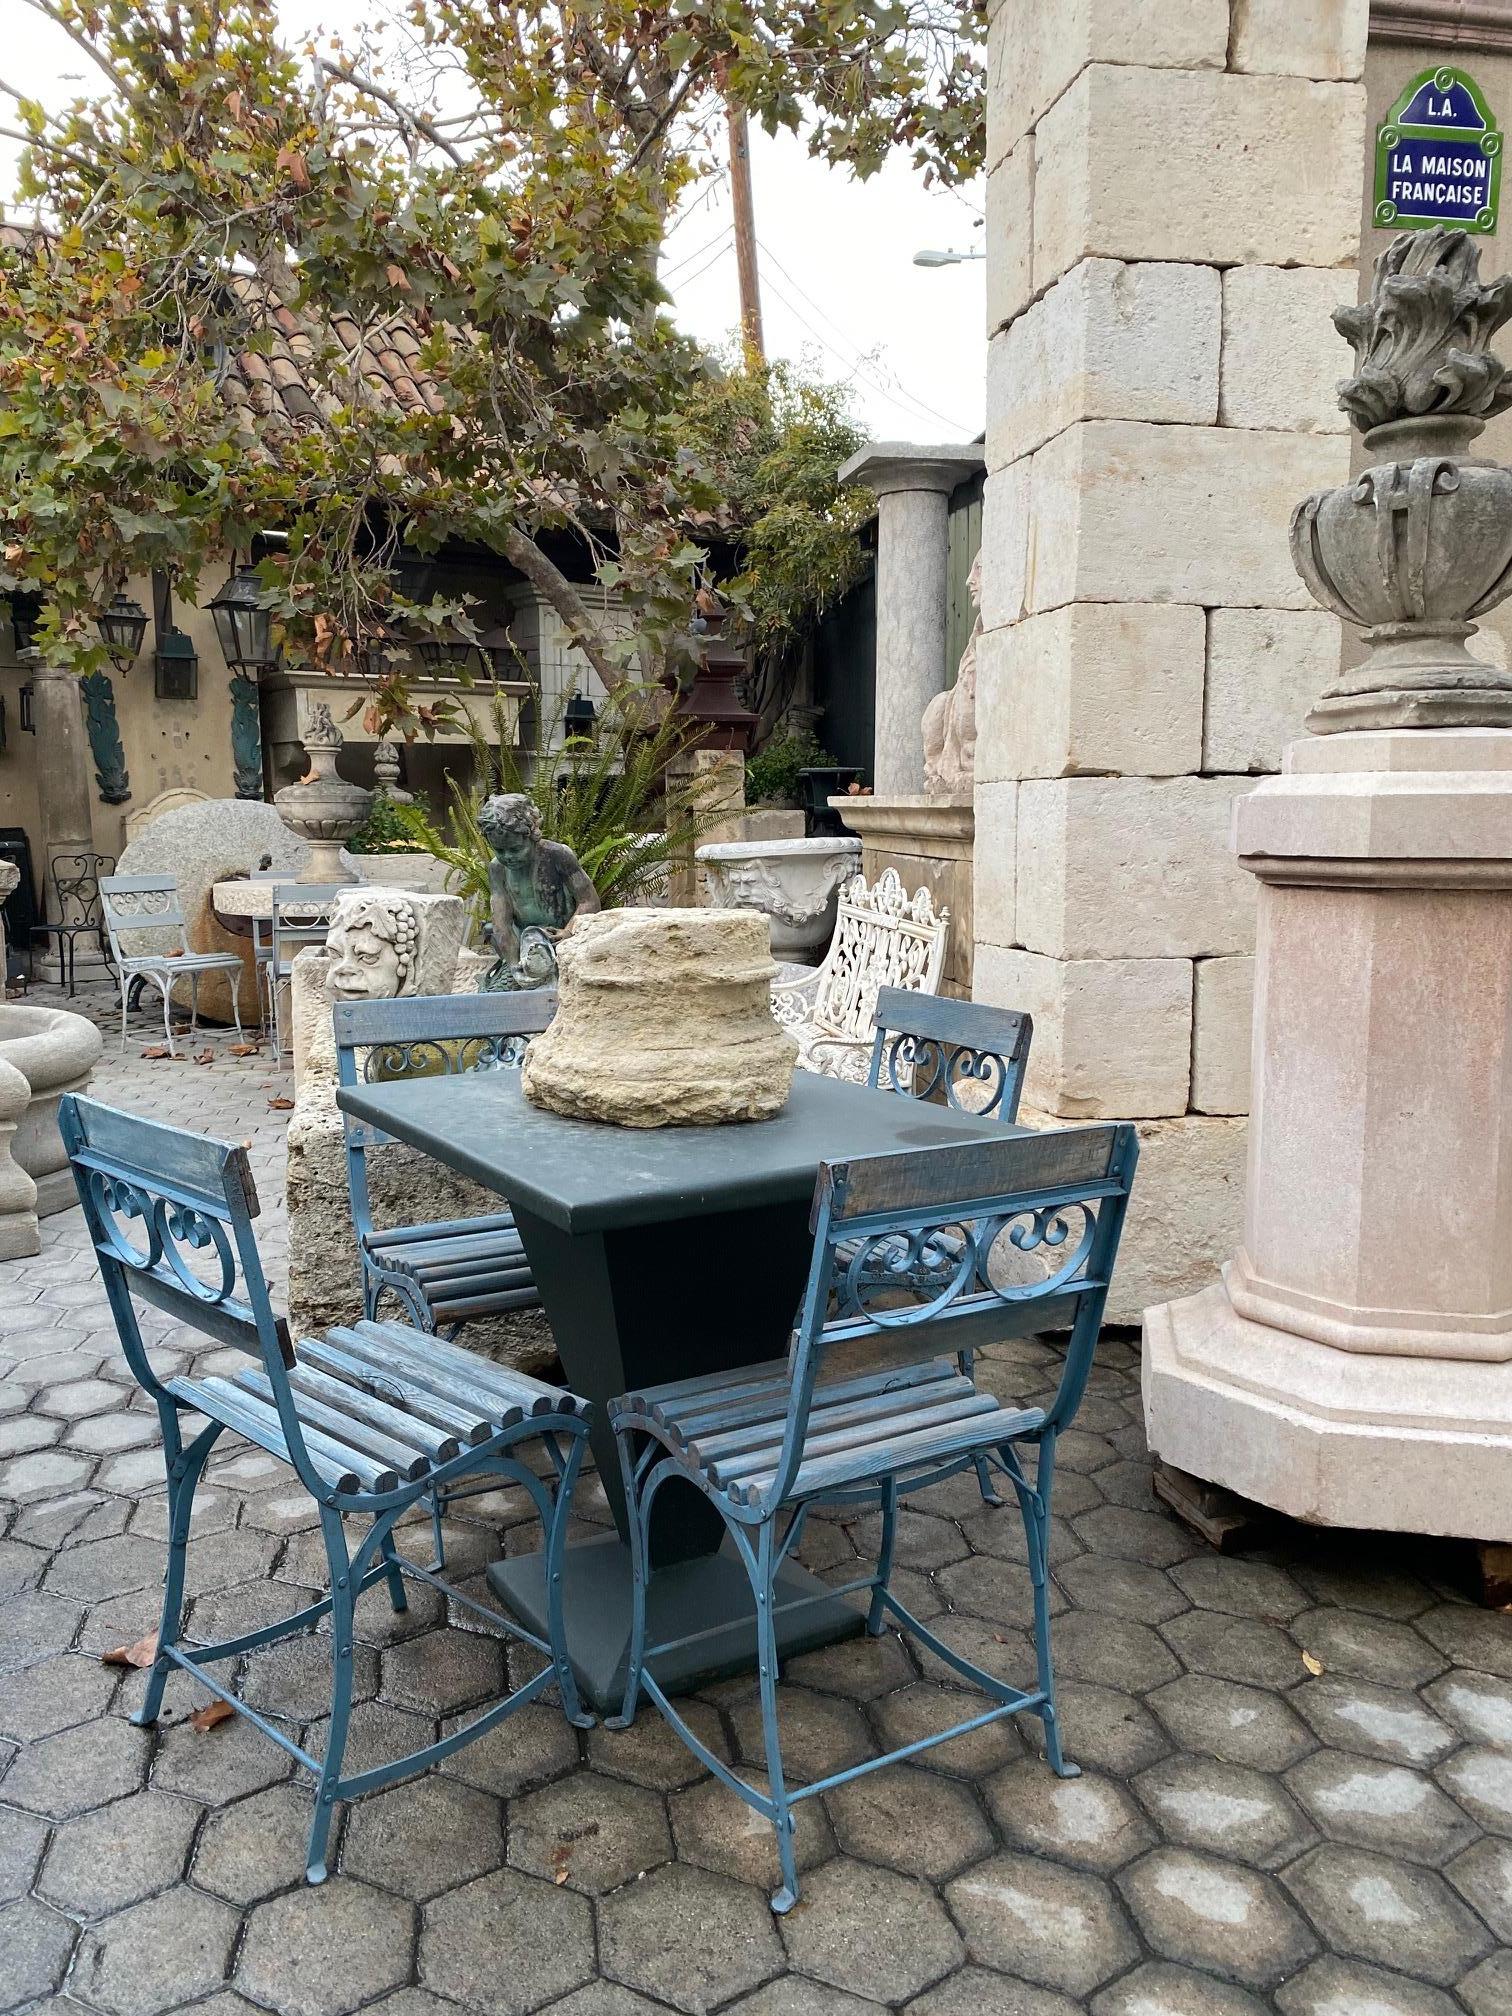 Schöne 19. Jahrhundert Seite Garten Terrasse Eisen Metall und geschnitztem Holz Stühle mit alten Farbe Möbel, von der Hippodrom Pferderennbahn in Paris, Frankreich. Wir haben insgesamt 8 in blauer Farbe, haben wir einige in der grauen und gelben